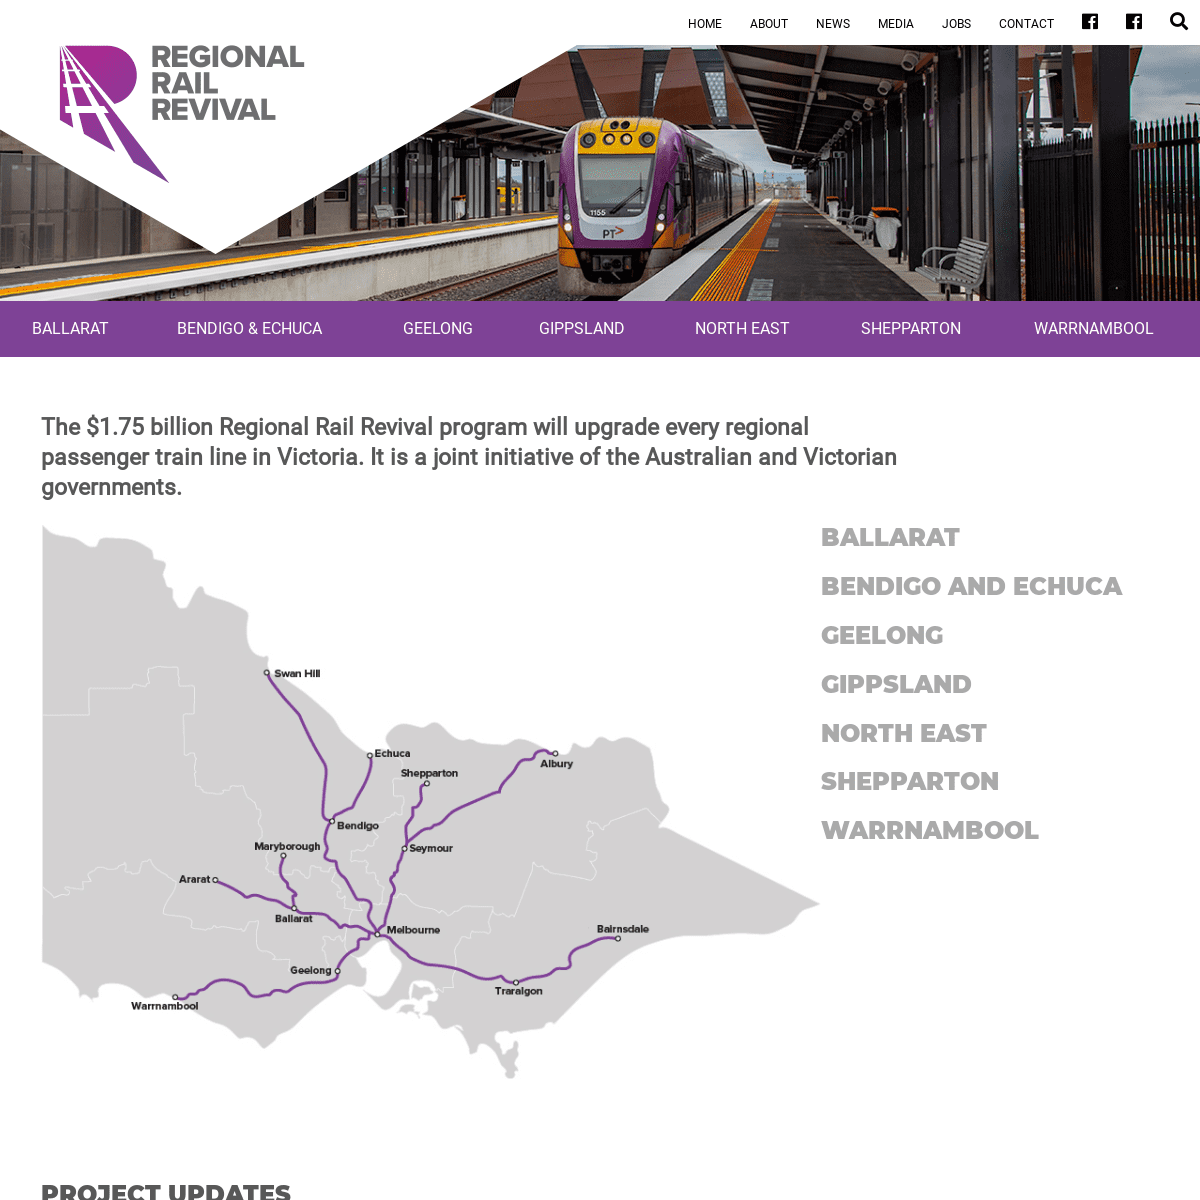 A complete backup of regionalrailrevival.vic.gov.au